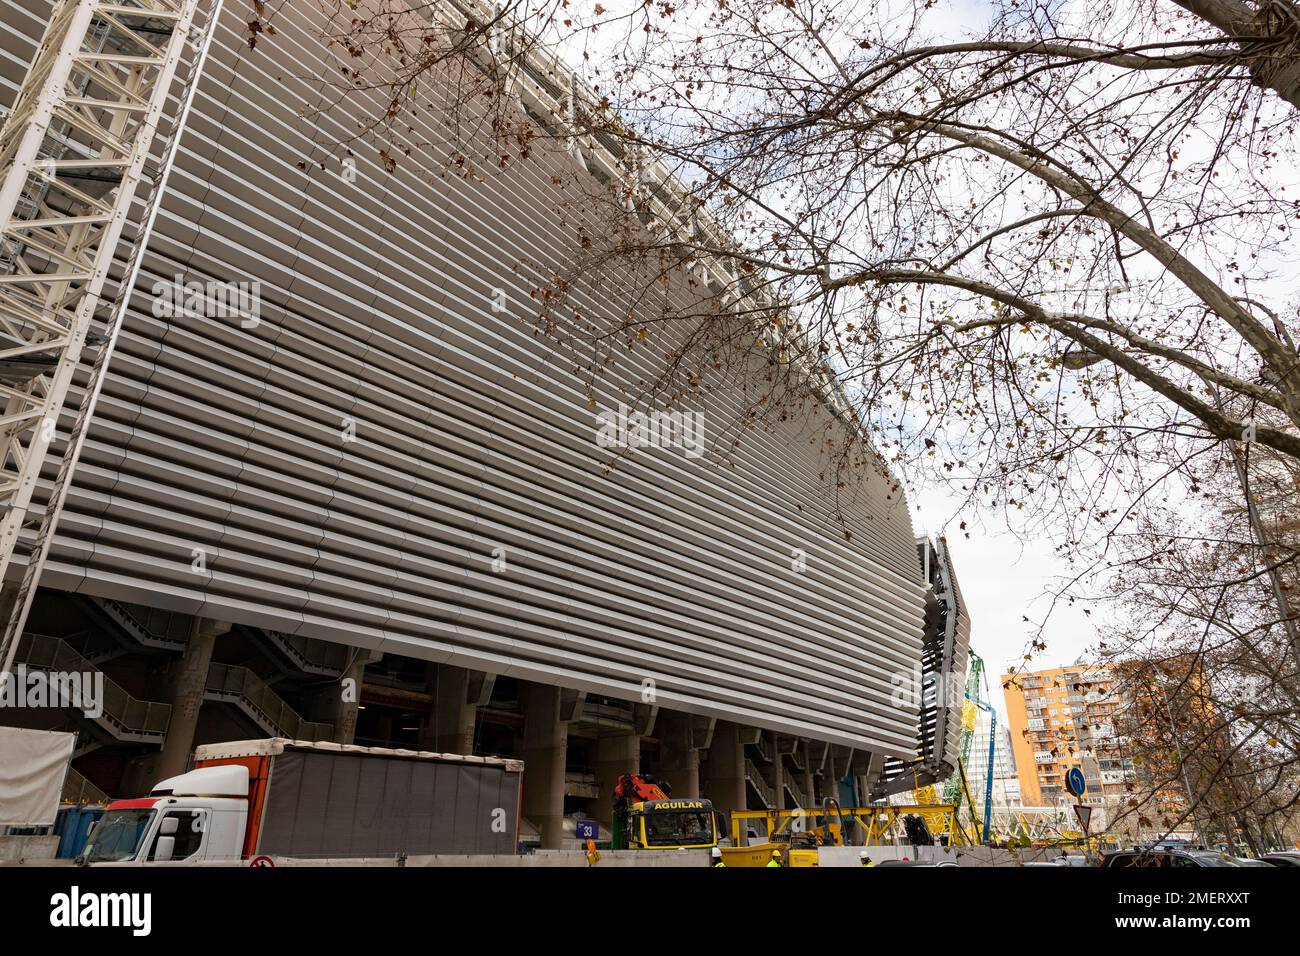 Santiago Bernabeu. Exterior del estadio Santiago Bernabéu en plena construcción y renovación del recinto donde se encuentra el Real Madrid C.F. Campo de fútbol. Foto de stock